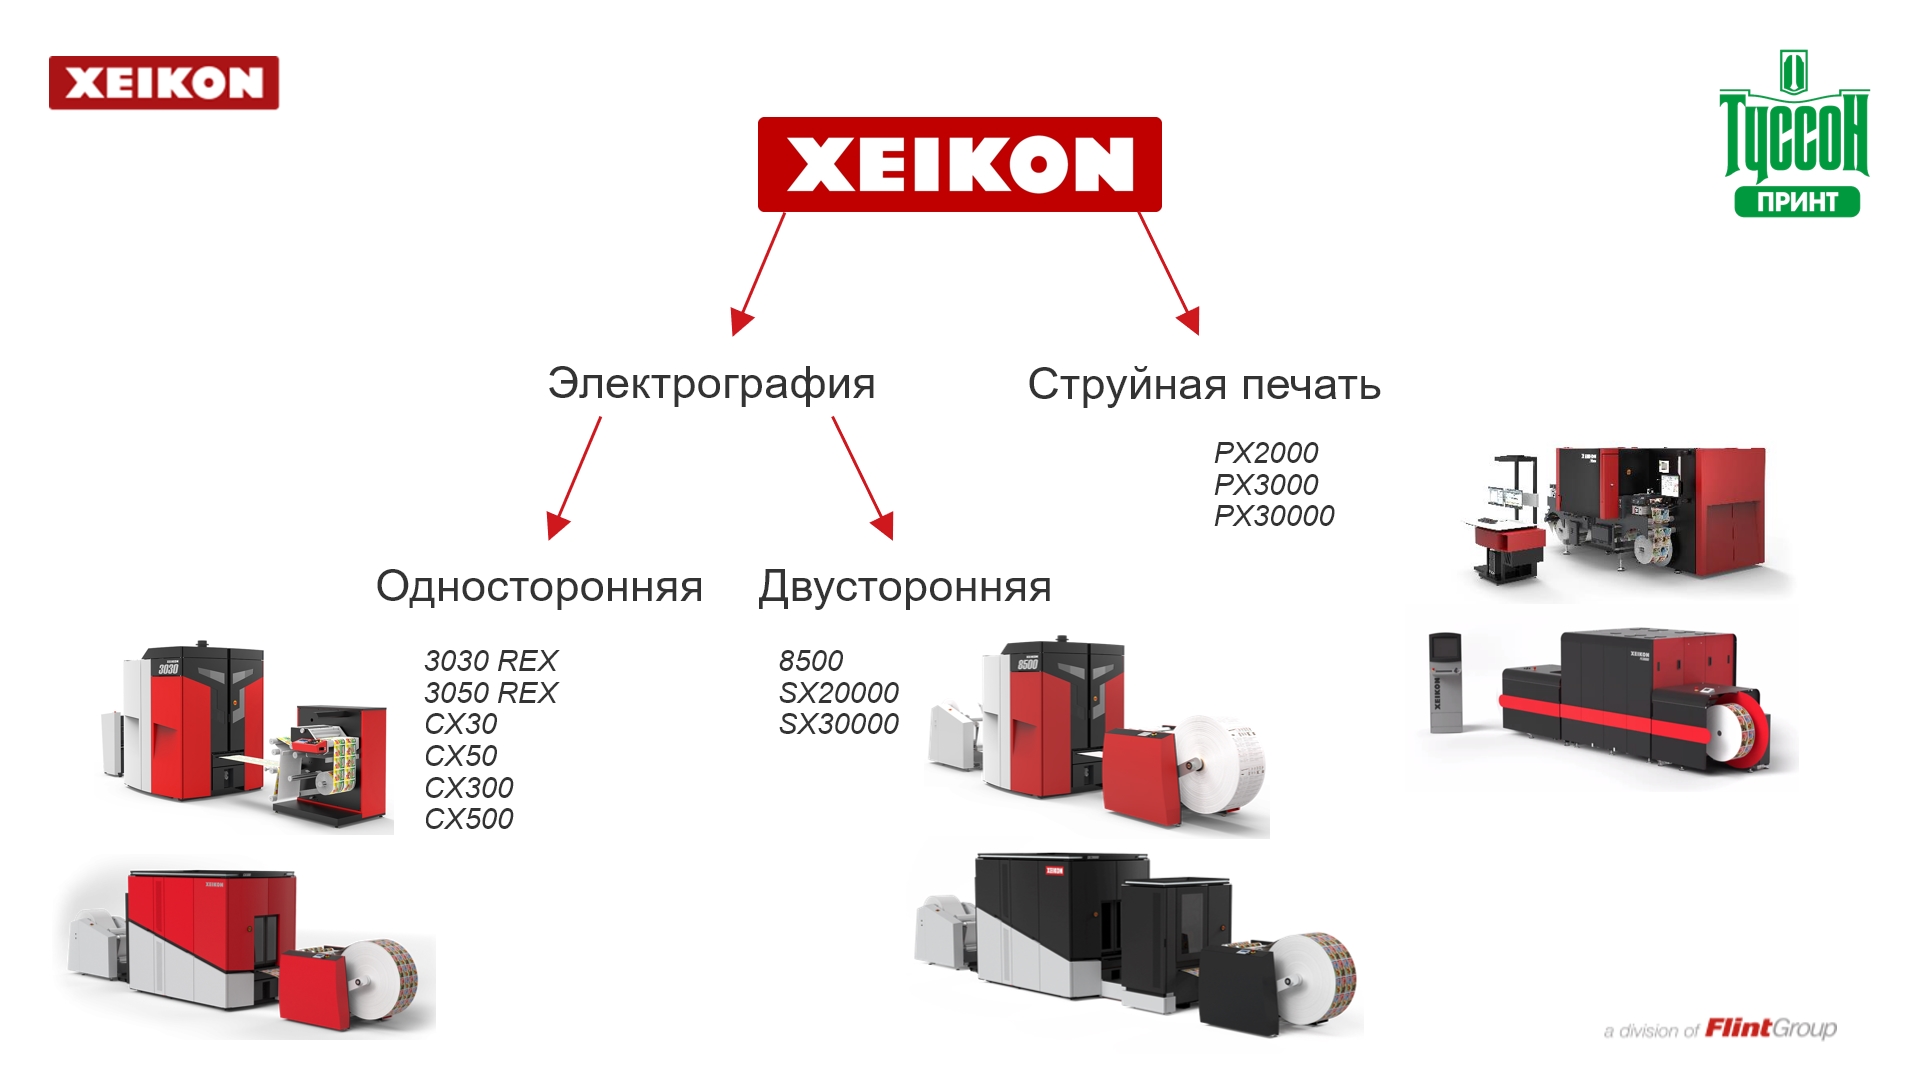 Портфолио цифровых печатных машин Xeikon по состоянию на 2021 г.